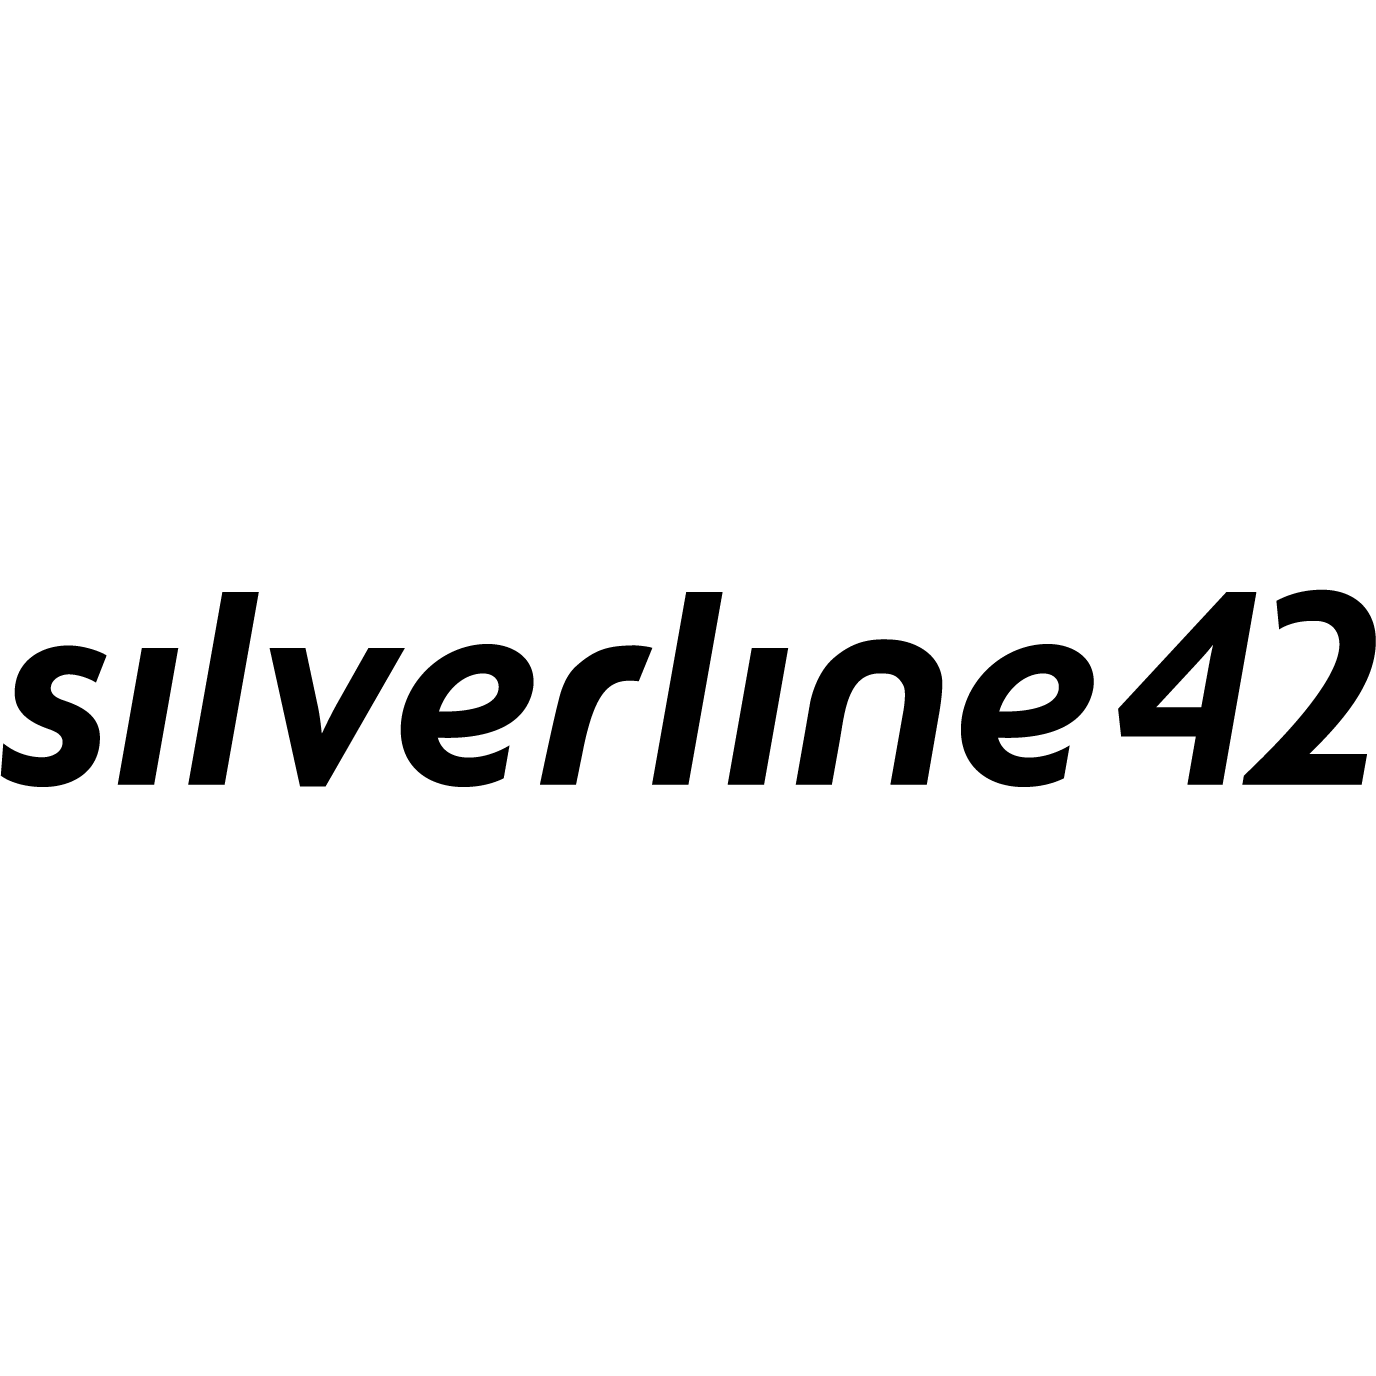 silverline41